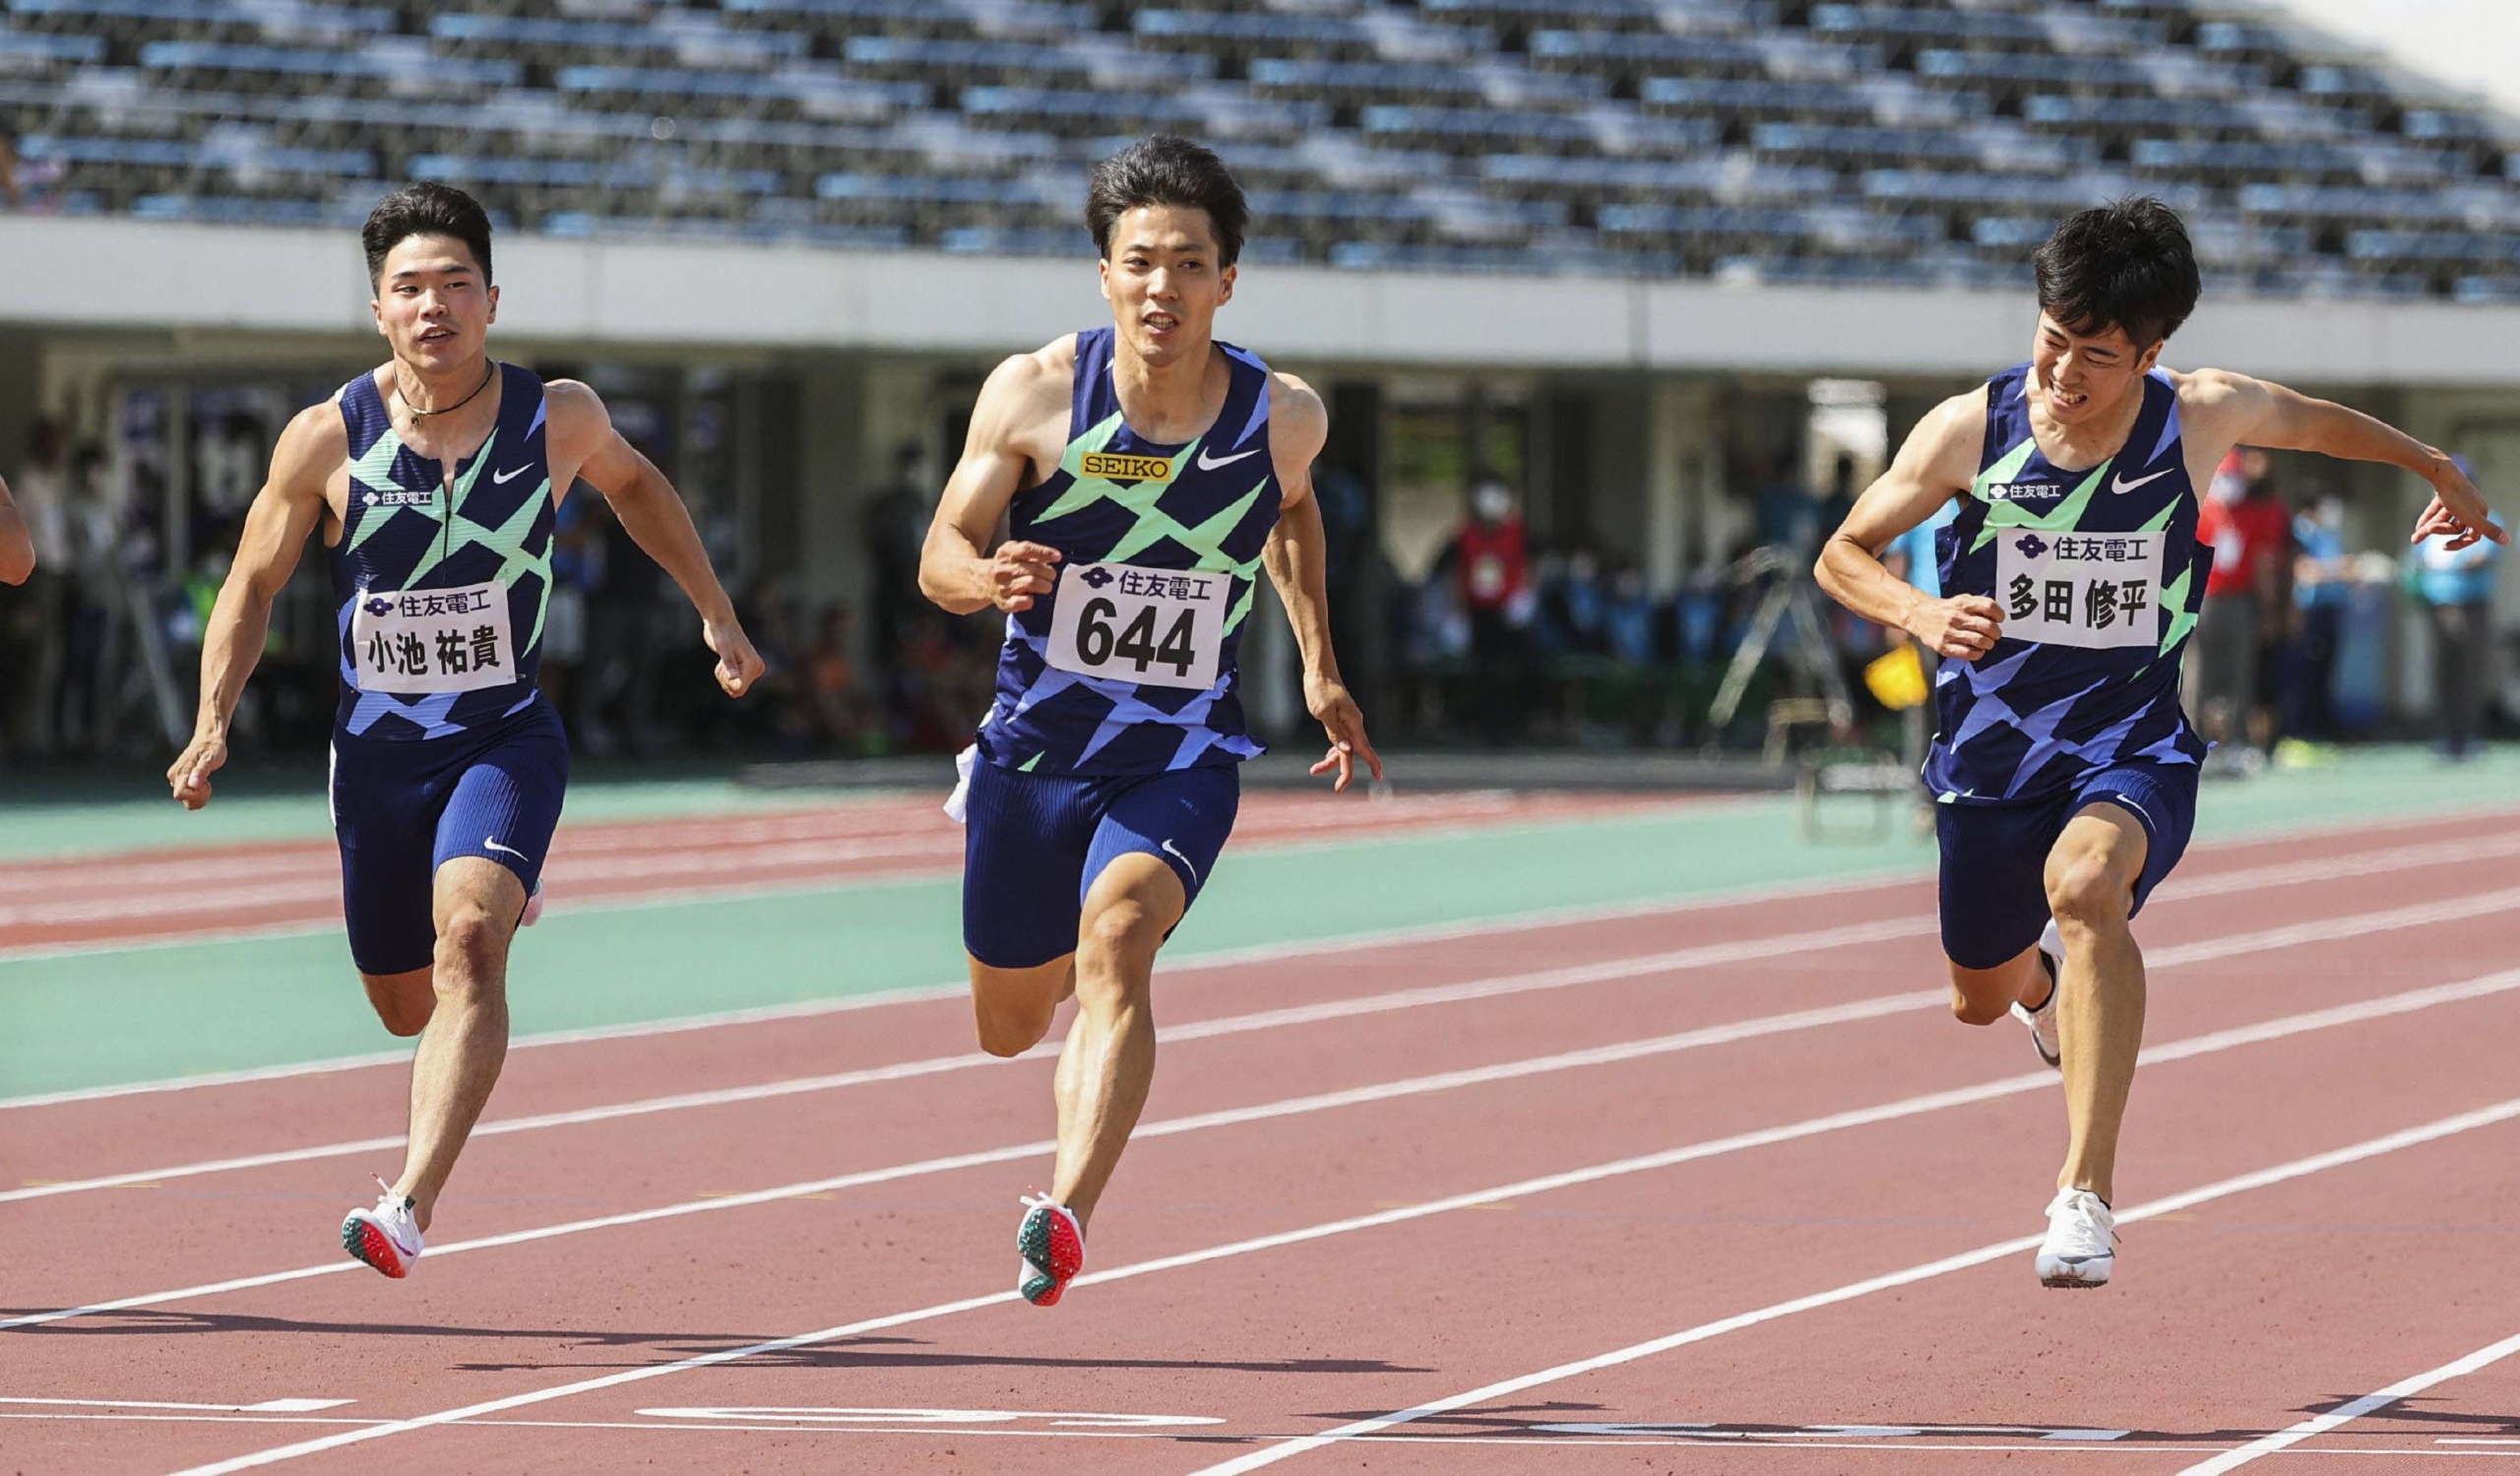 VĐV Ryota Yamagata phá kỷ lục quốc gia Nhật Bản đường chạy 100m